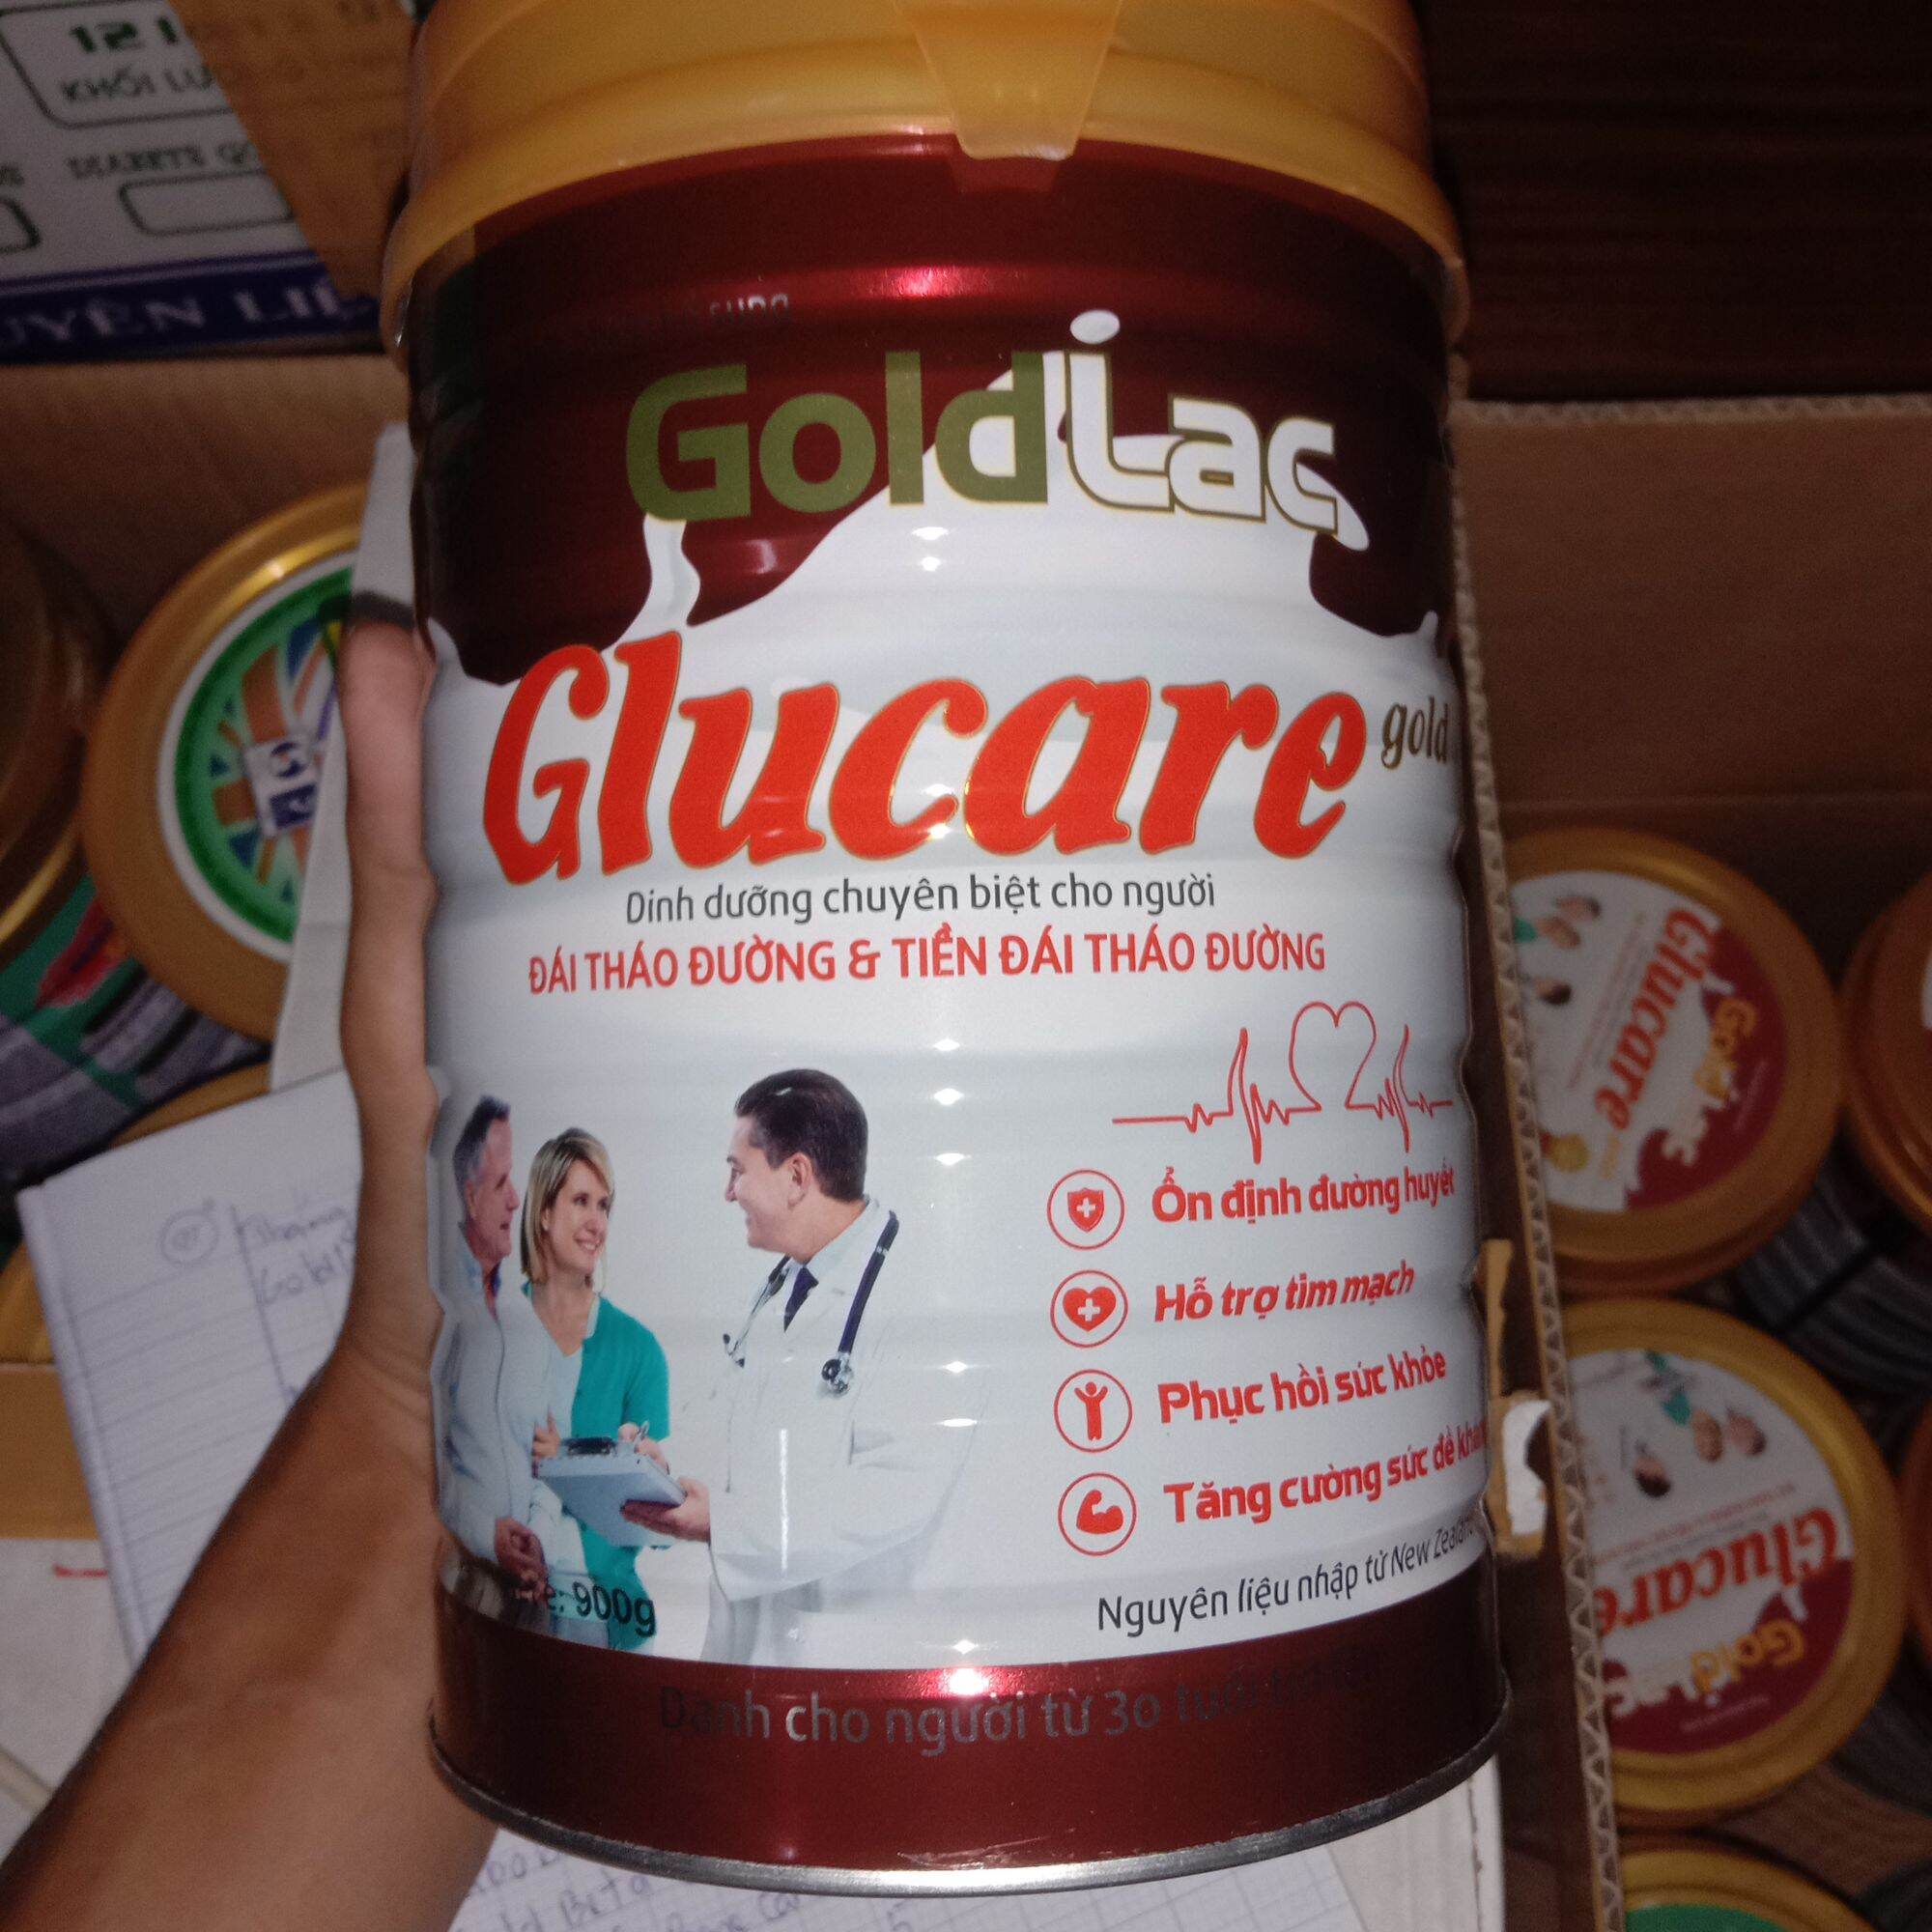 Sữa cho người tiểu đường Goldlac glucare 900g